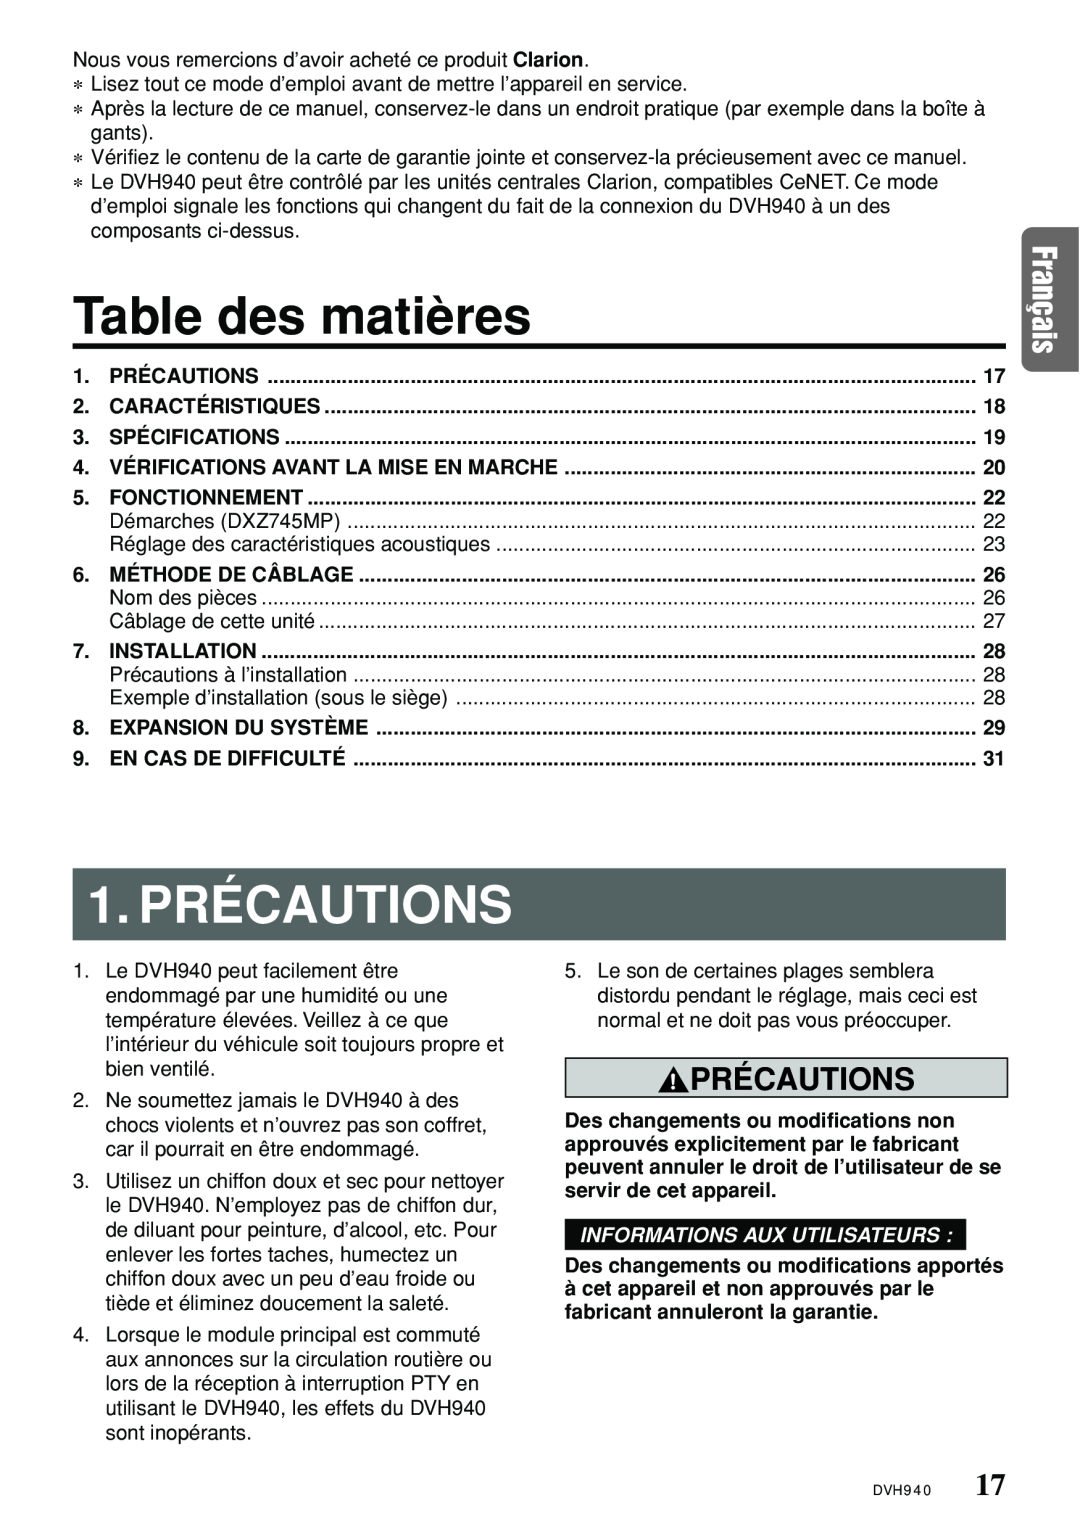 Clarion DVH940N owner manual Table des matières, 1.PRÉCAUTIONS, Précautions, Informations Aux Utilisateurs 